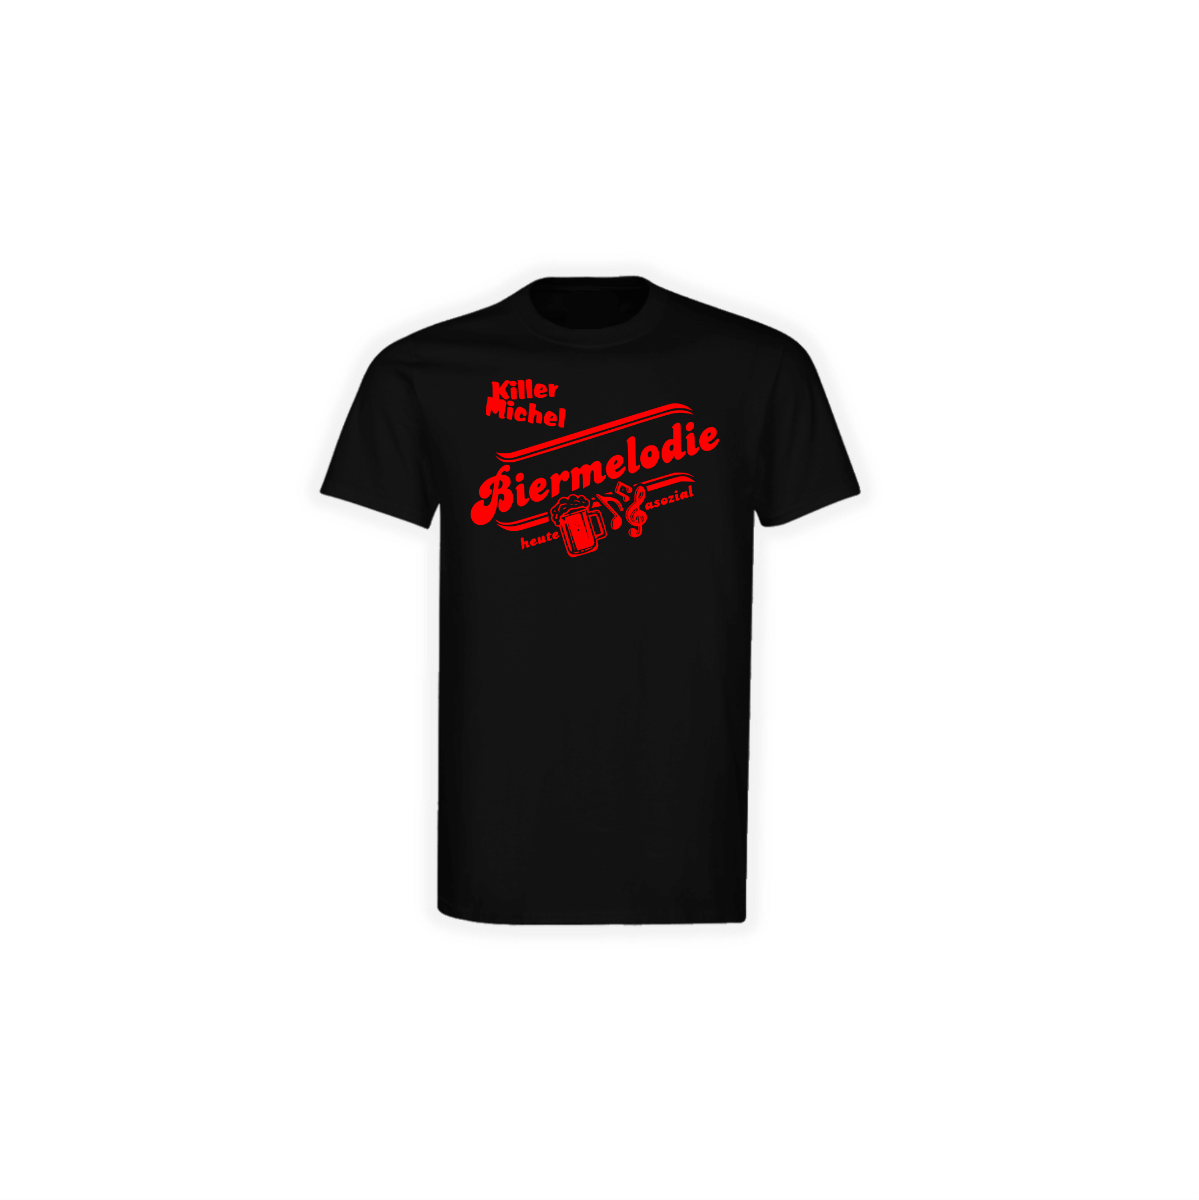 T-Shirt "BIERMELODIE" schwarz, roter Druck